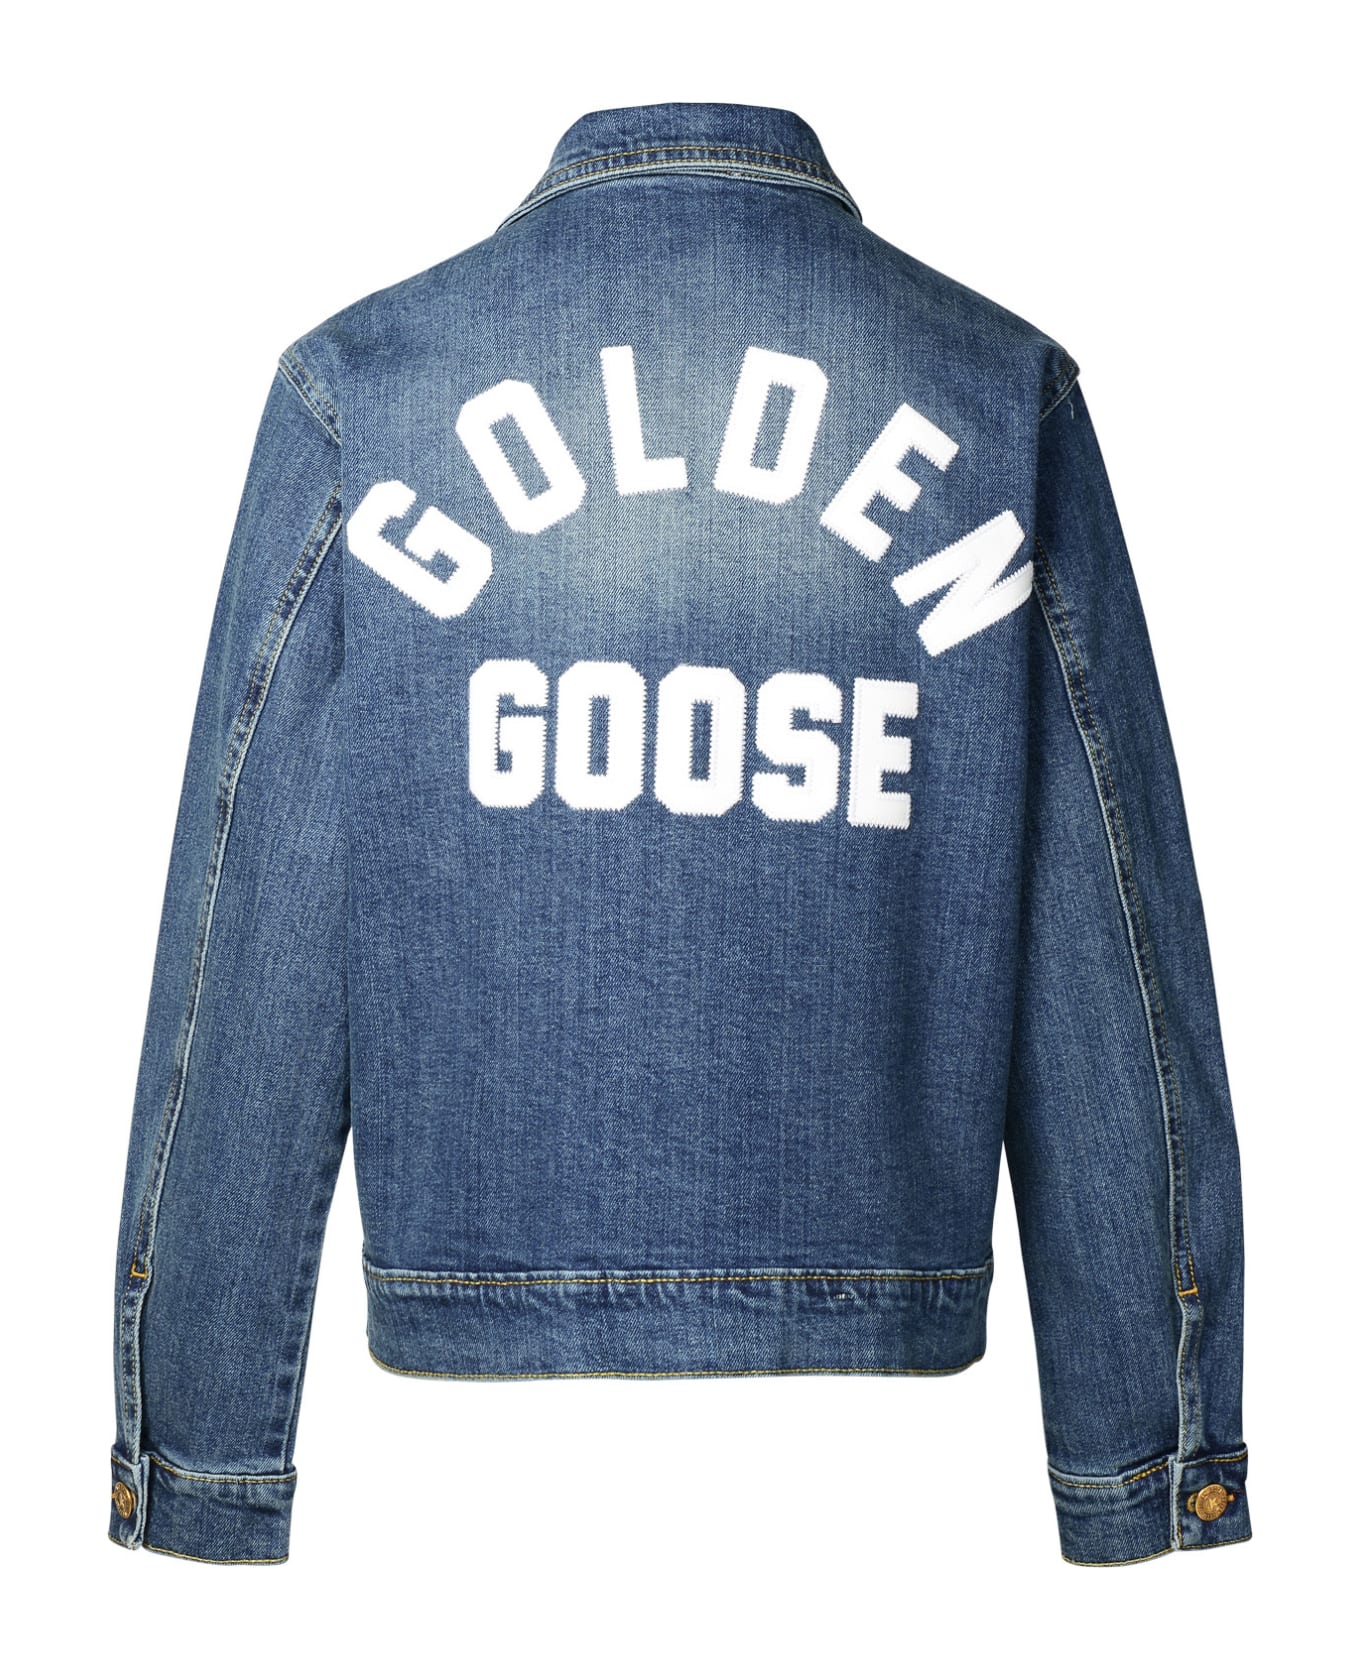 Golden Goose Blue Denim Jacket - Blue